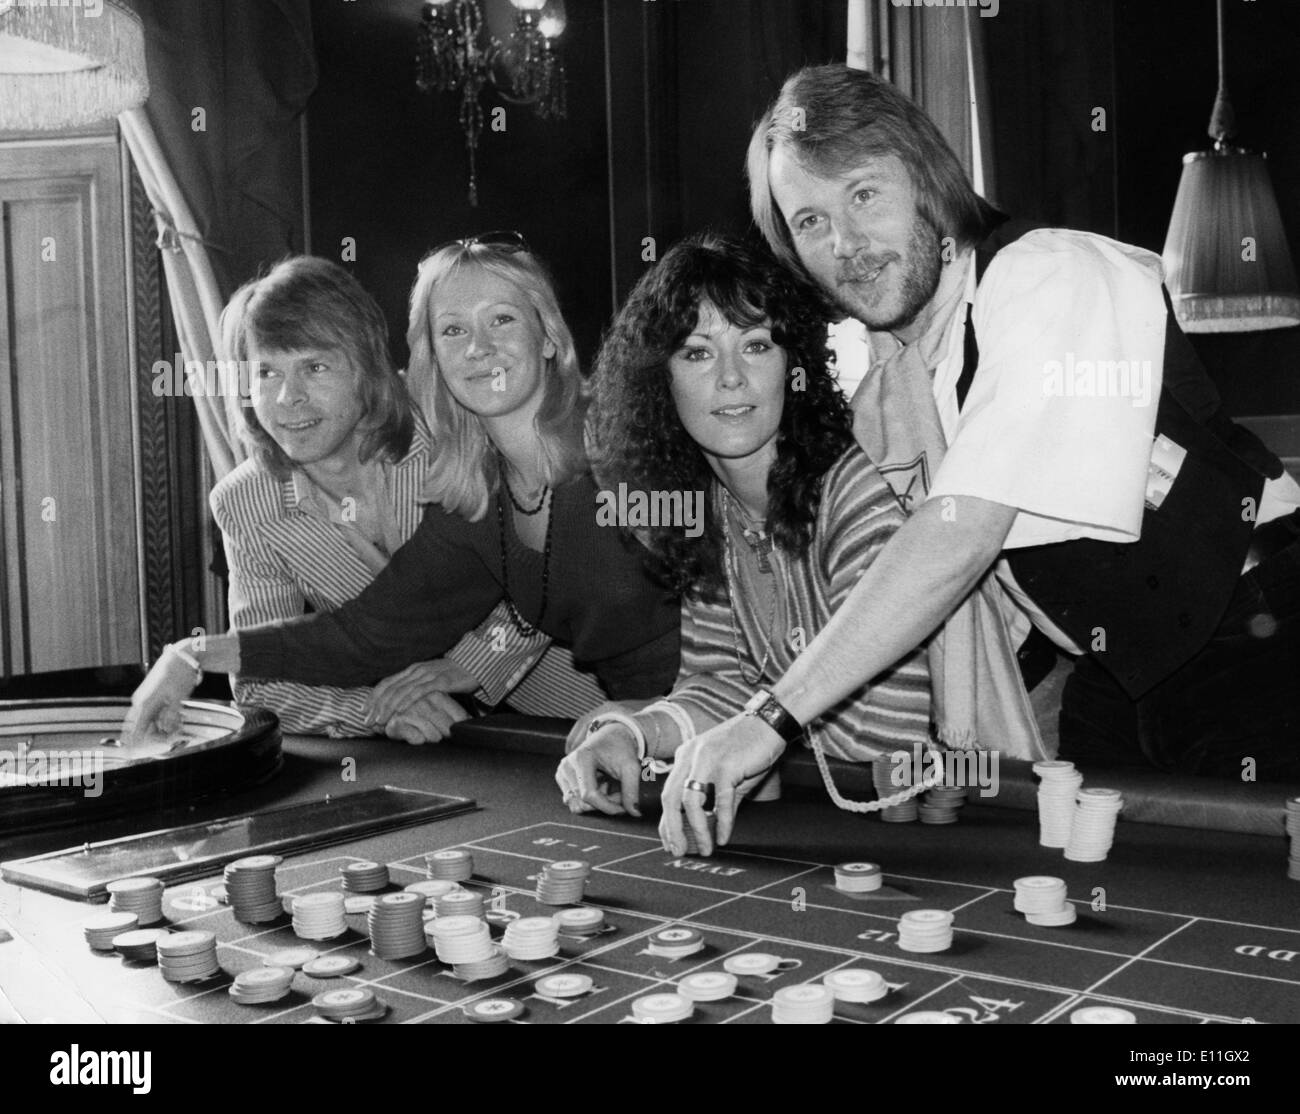 5559850 (900324) ABBA, schwedische Musikgruppe, posieren an einem Roulette-Tisch w‰hrend einer Pressekonferenz zu ihrem Film Stock Photo